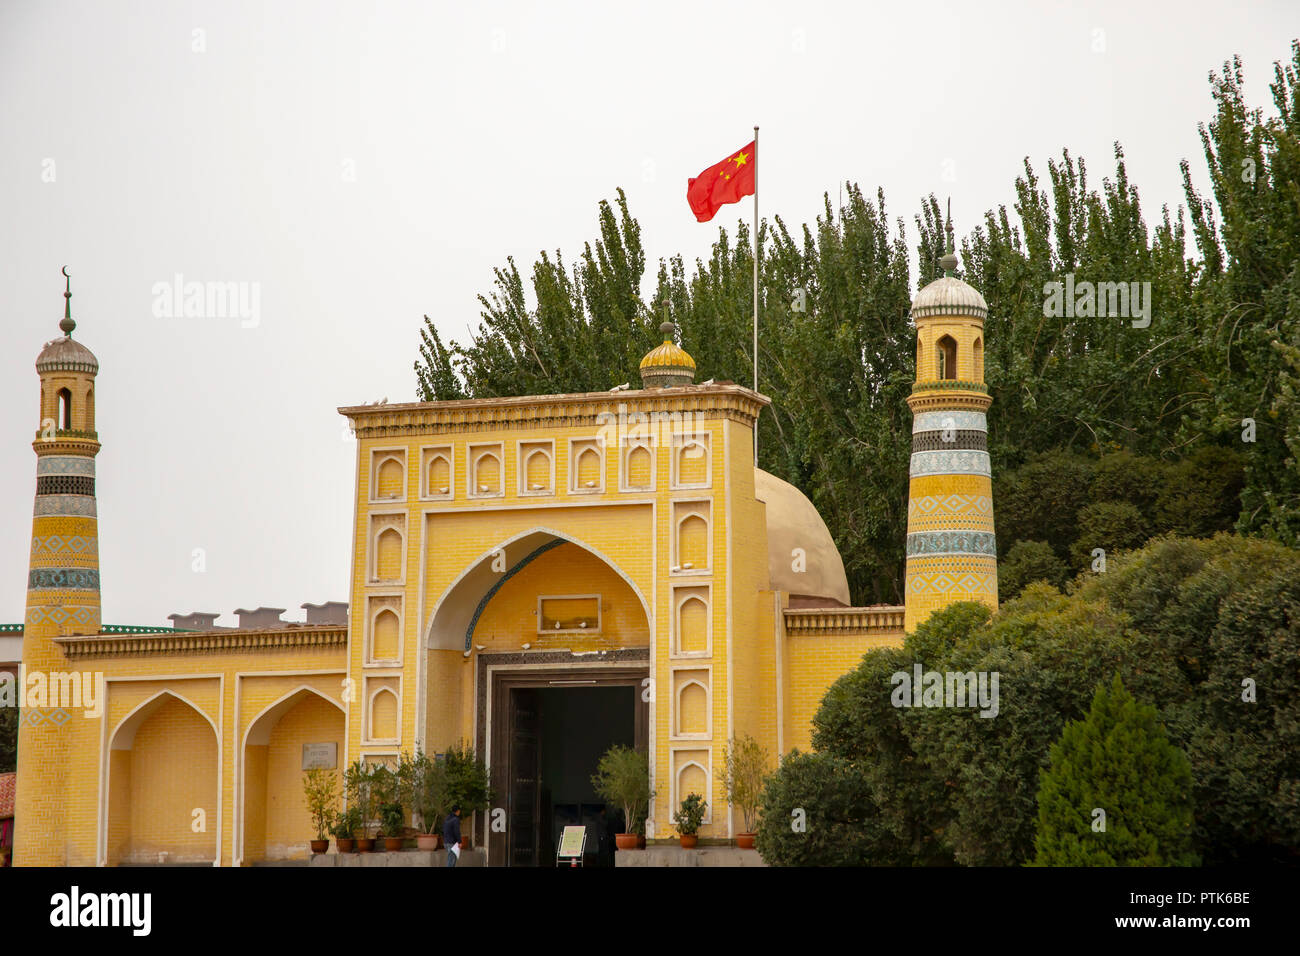 La place vide autour de la mosquée Eidgah Uigher avec drapeau chinois de Kashgar, ou Kashi, Xinjiang, Chine. Banque D'Images